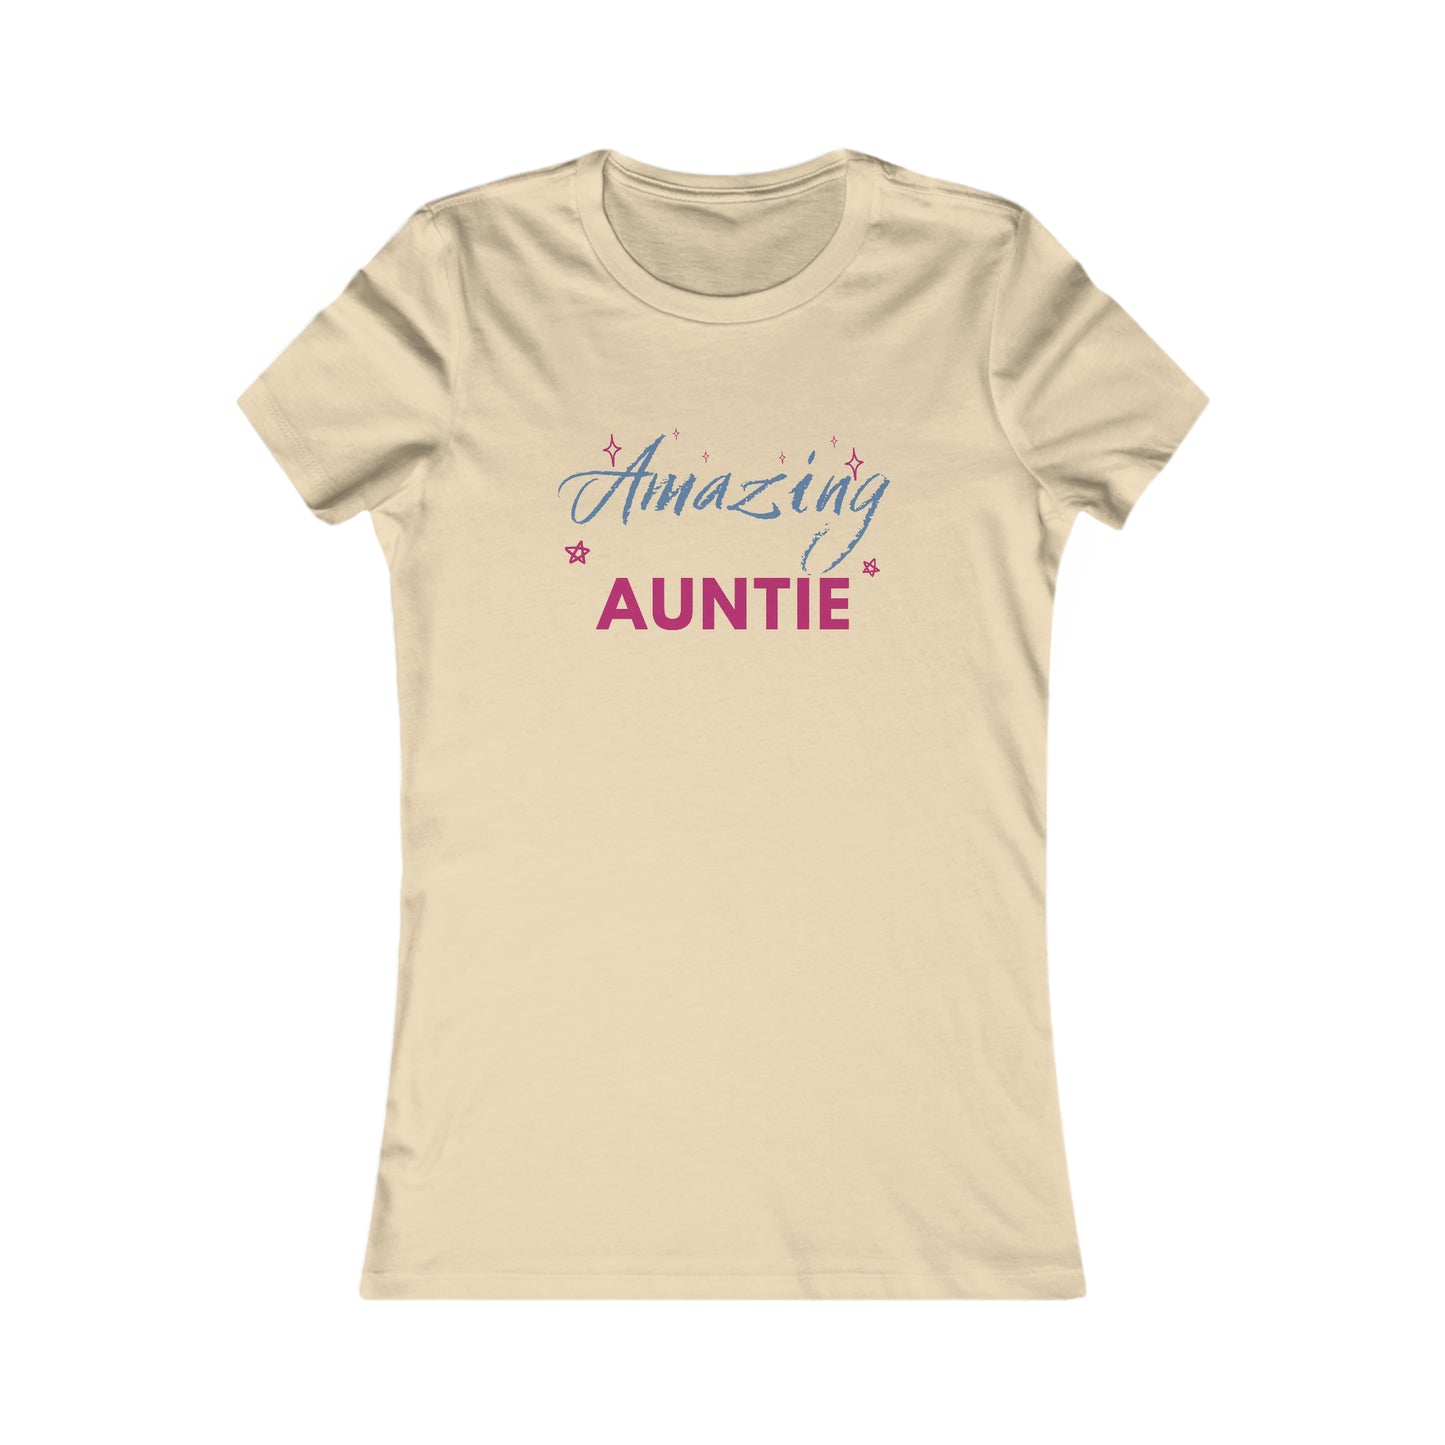 Amazing Auntie Shirt Women's Favorite Tee